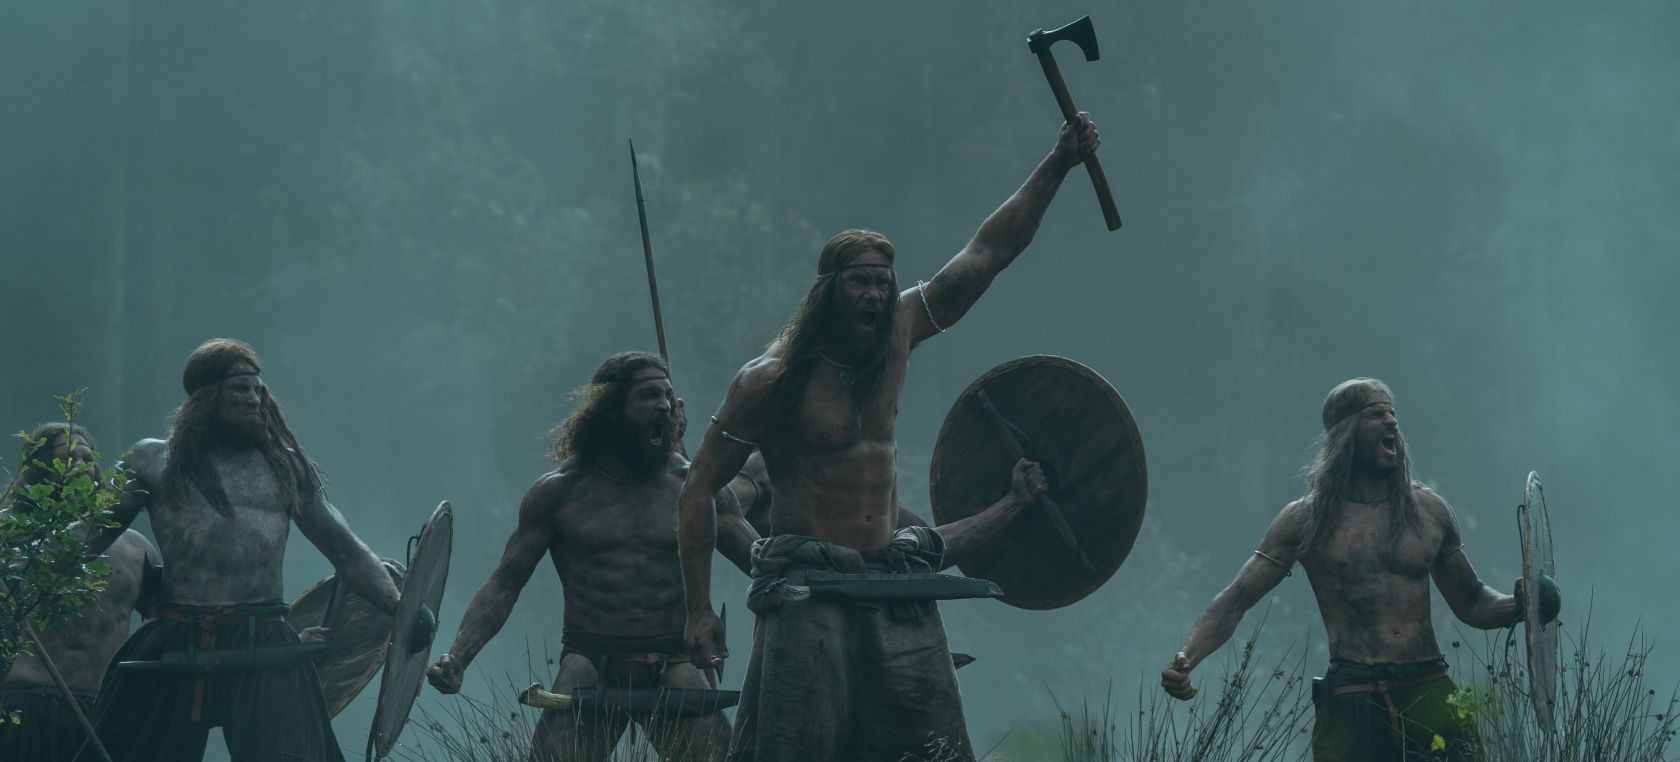 5 Razones para ver ‘El Hombre del Norte’, una tragedia de venganza y vikingos que desafía al espectador